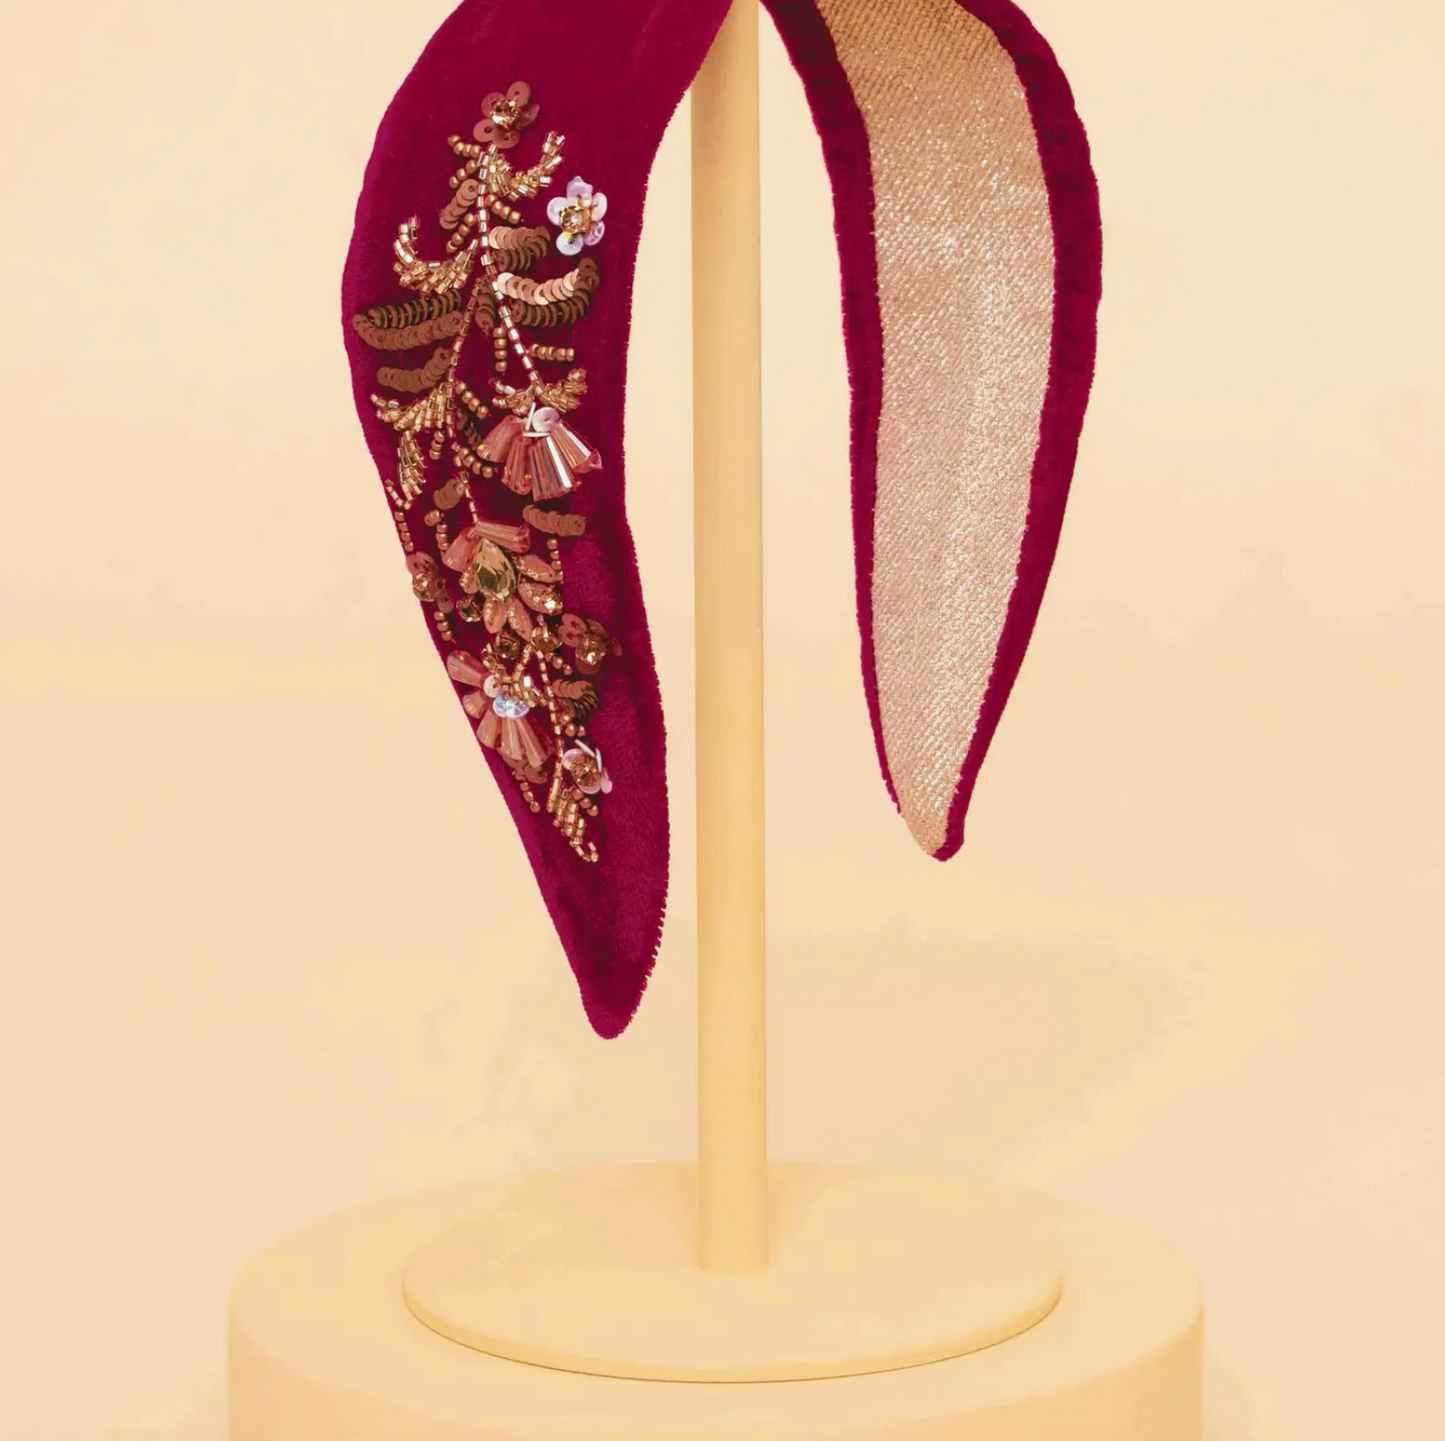 Velvet Embellished Headband - Golden Wildflowers, Wild Rose